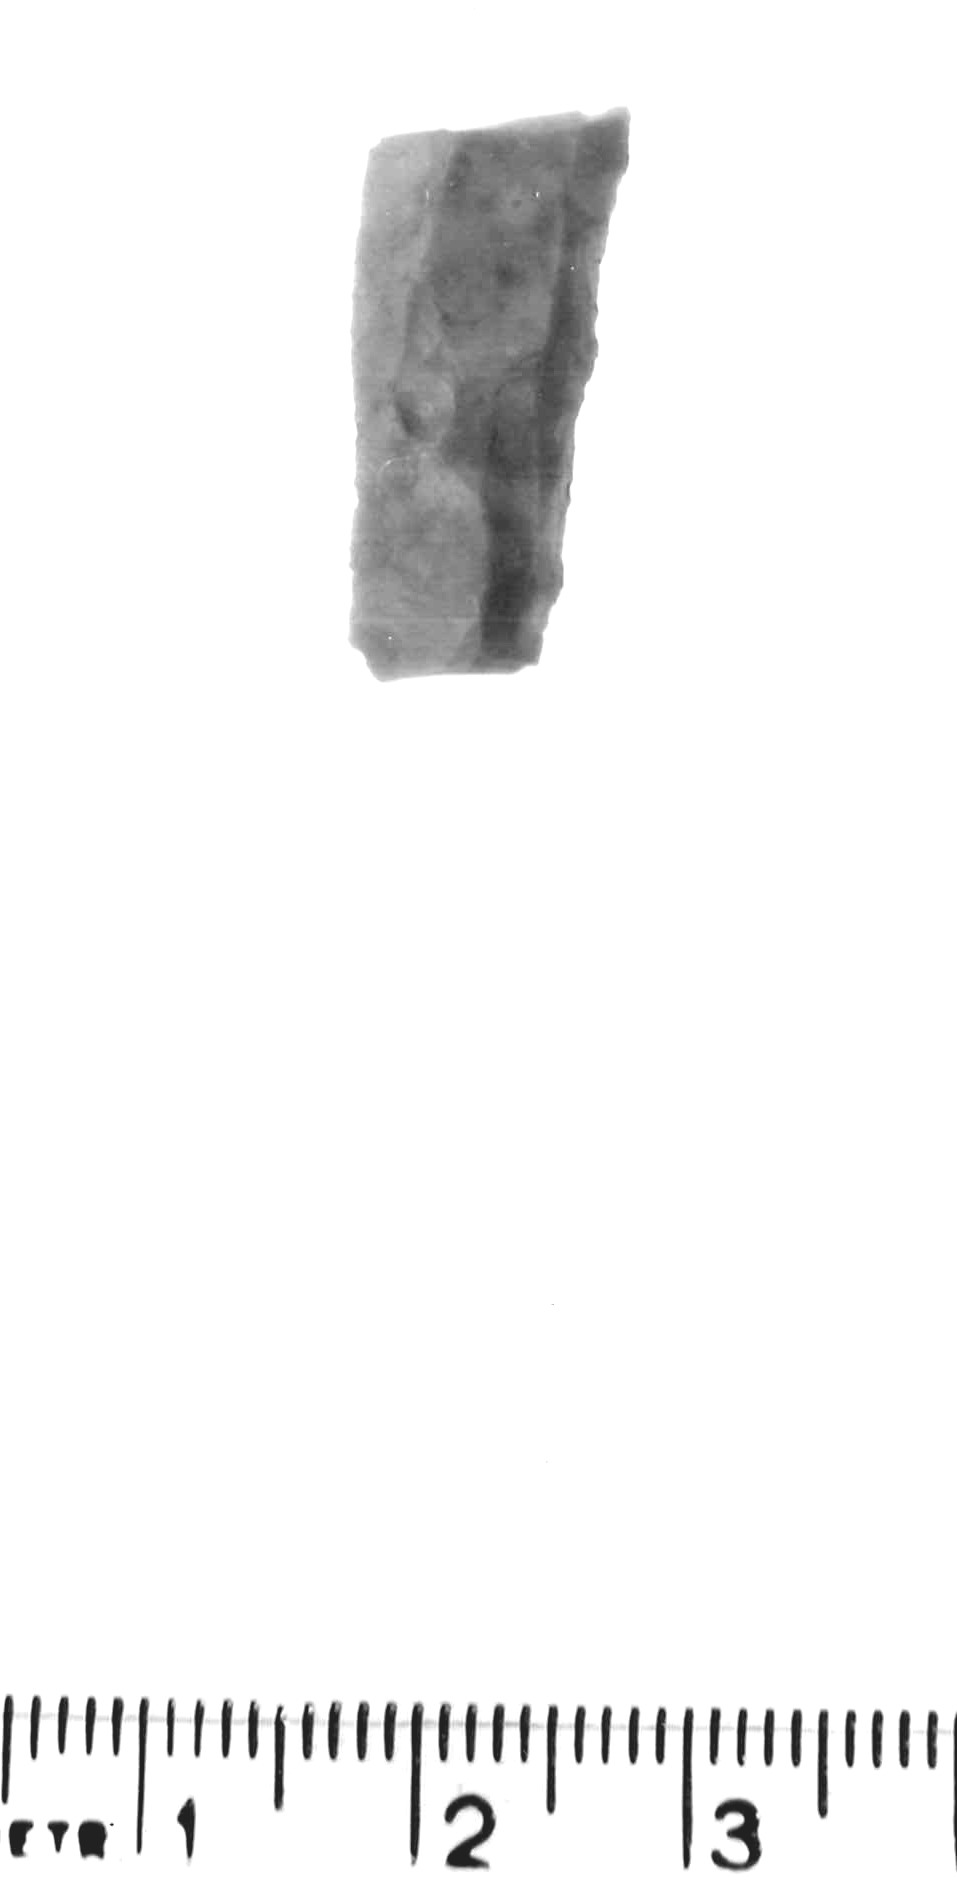 punta a dorso totale - epigravettiano antico (paleolitico superiore)